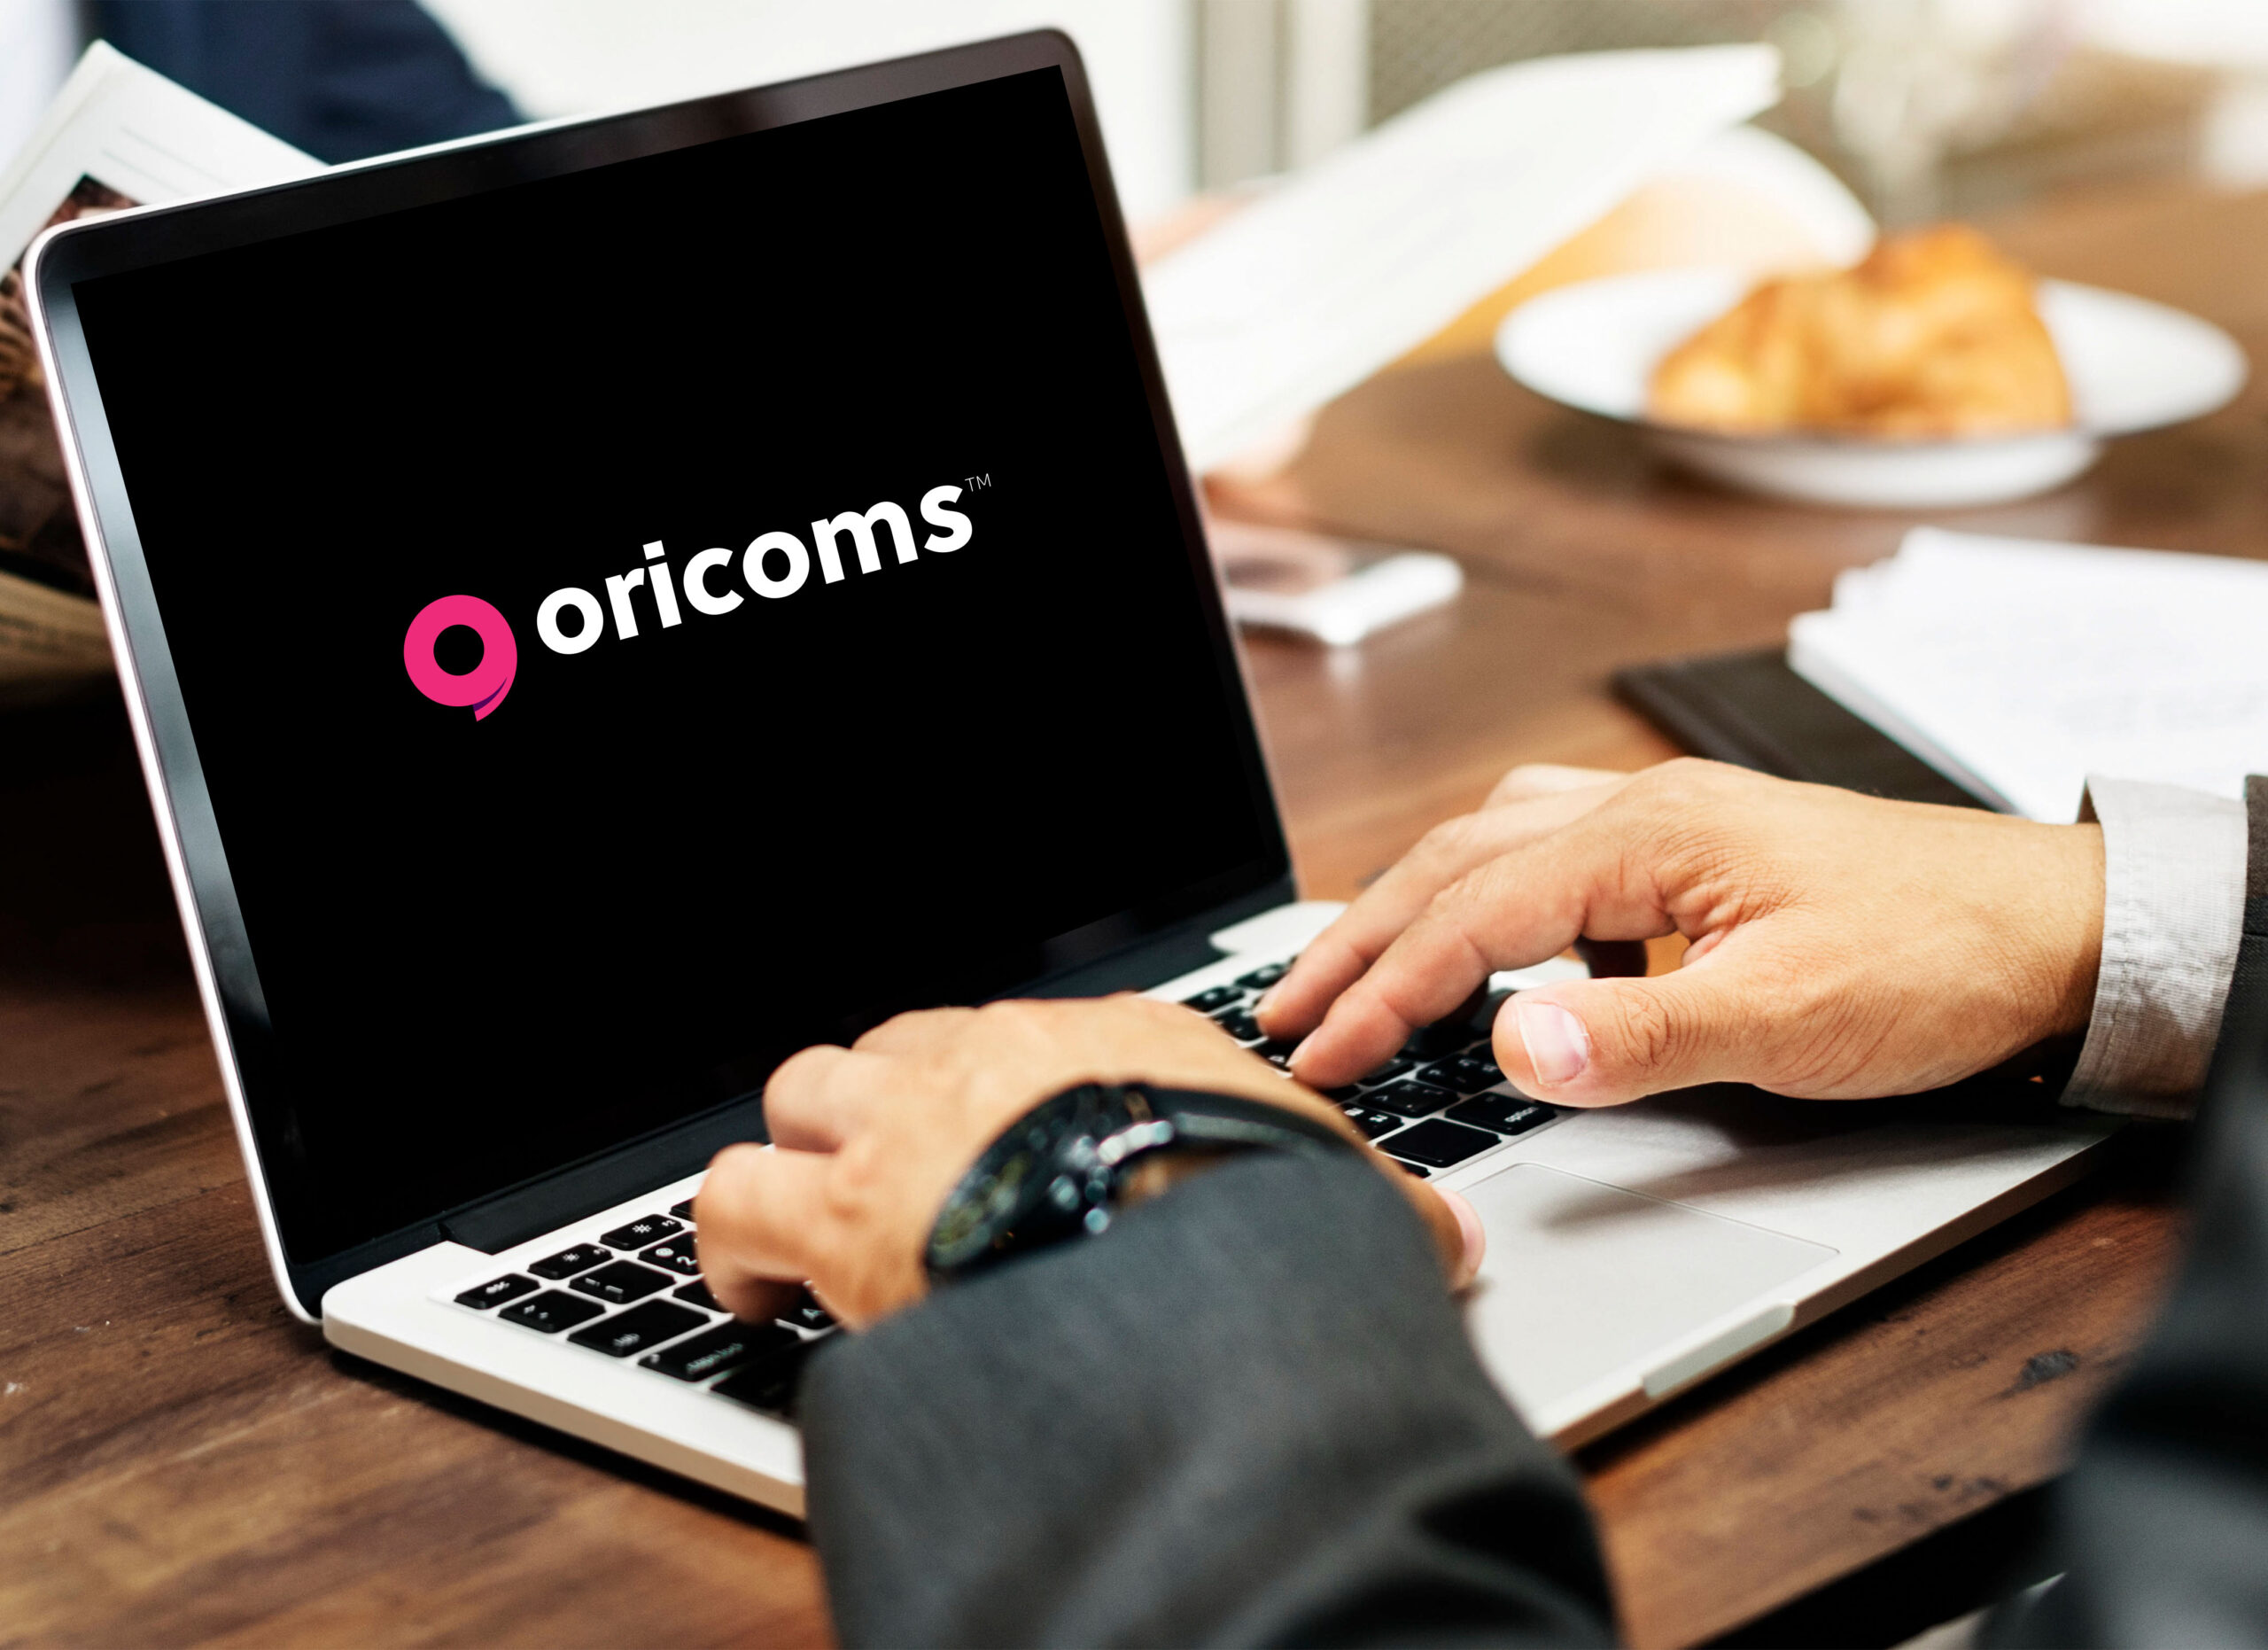 Trademark Registration for Oricoms